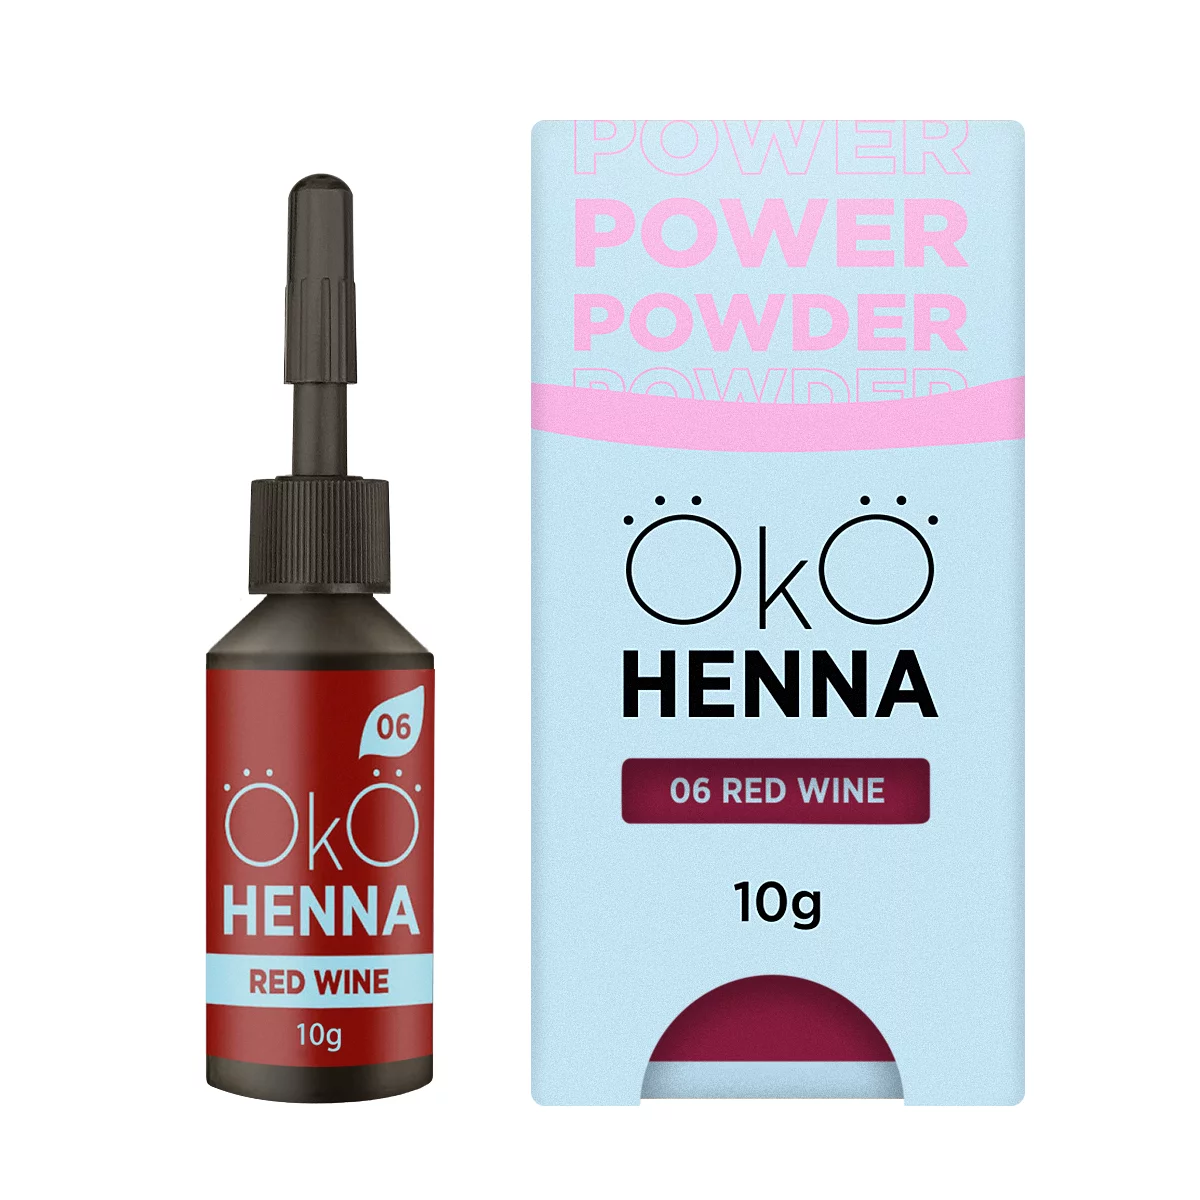 OKO Power Powder - 06 Red wine (10gr)